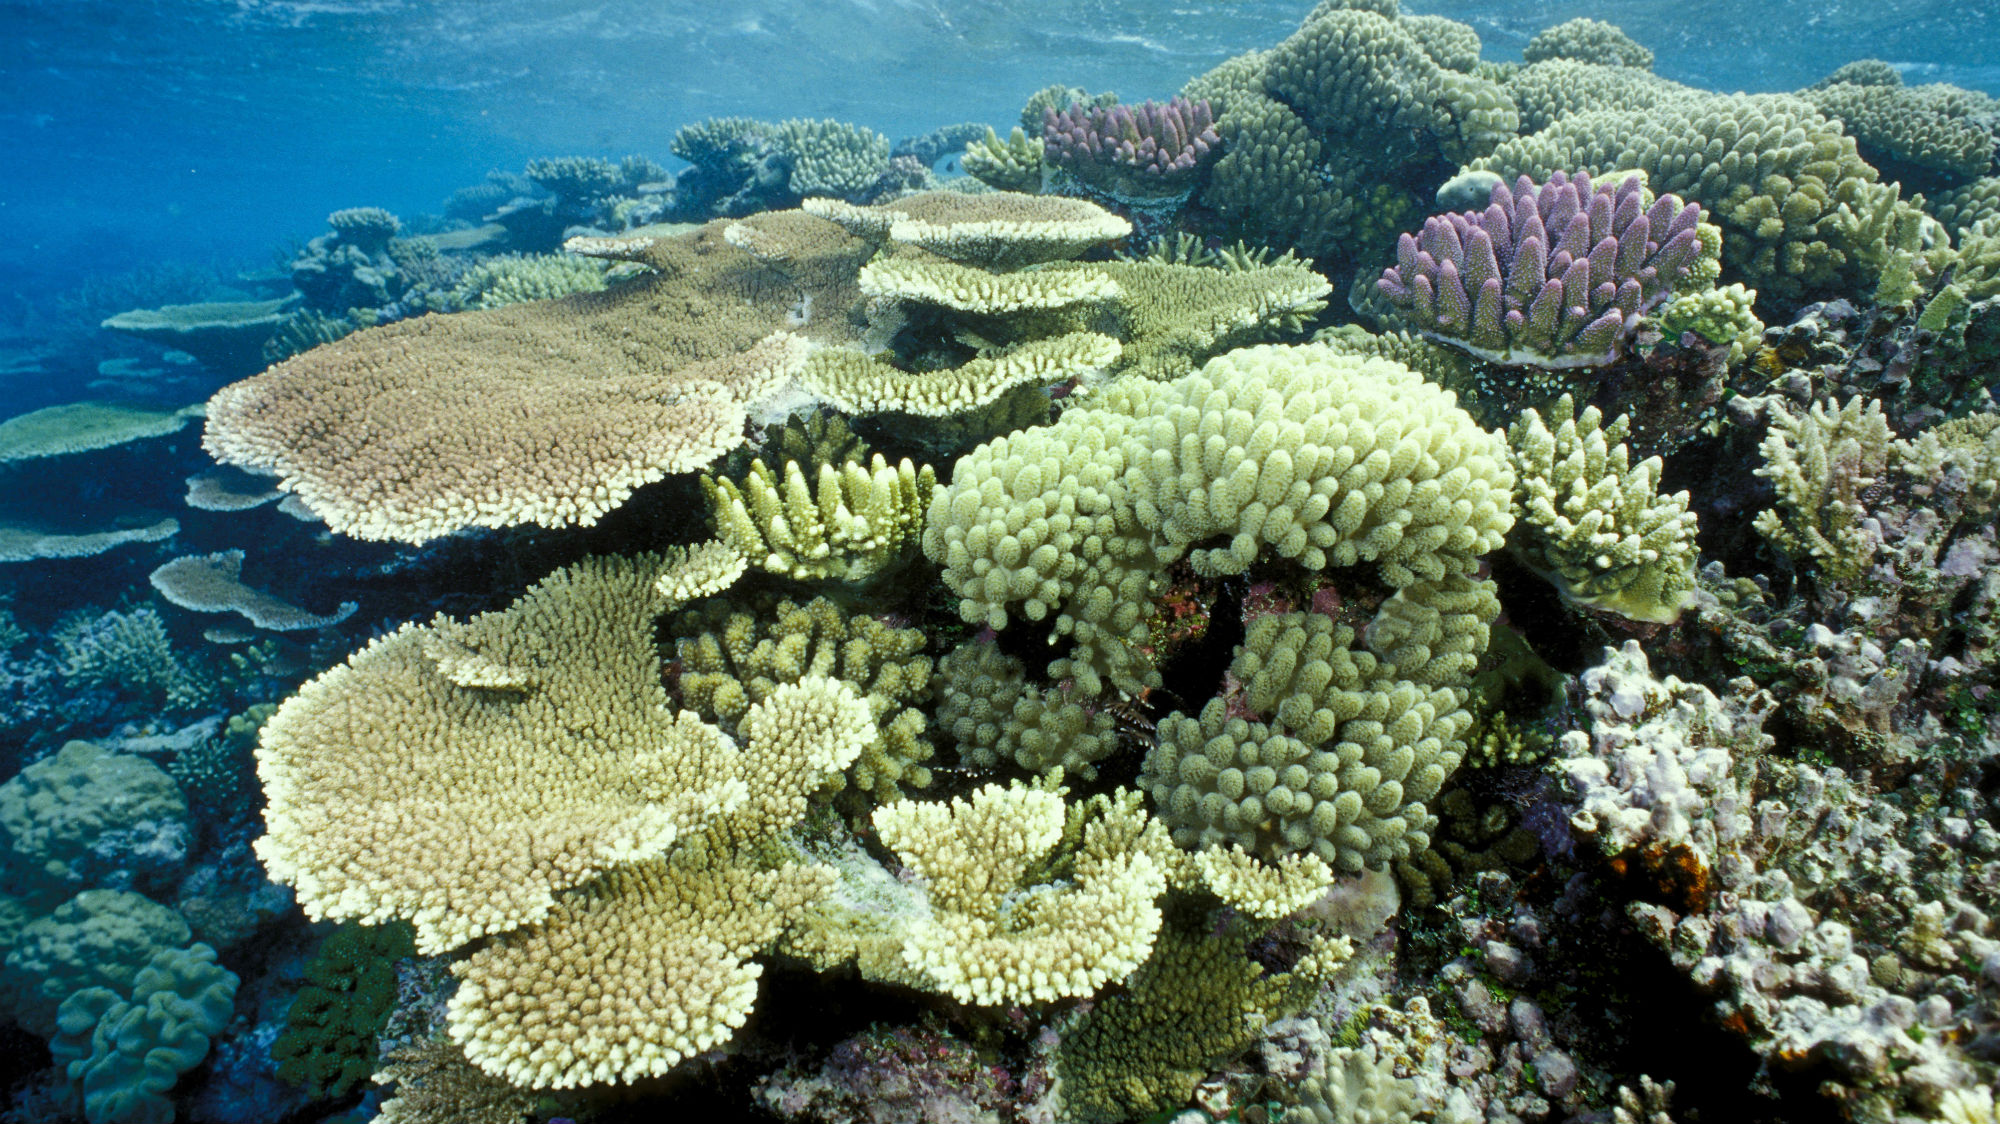 Коралловый риф протянувшийся вдоль восточной окраины материка. Атлантический океан коралловый риф. Амазонский коралловый риф. Коралловые рифы в Амазонке. Бразилия рифы.